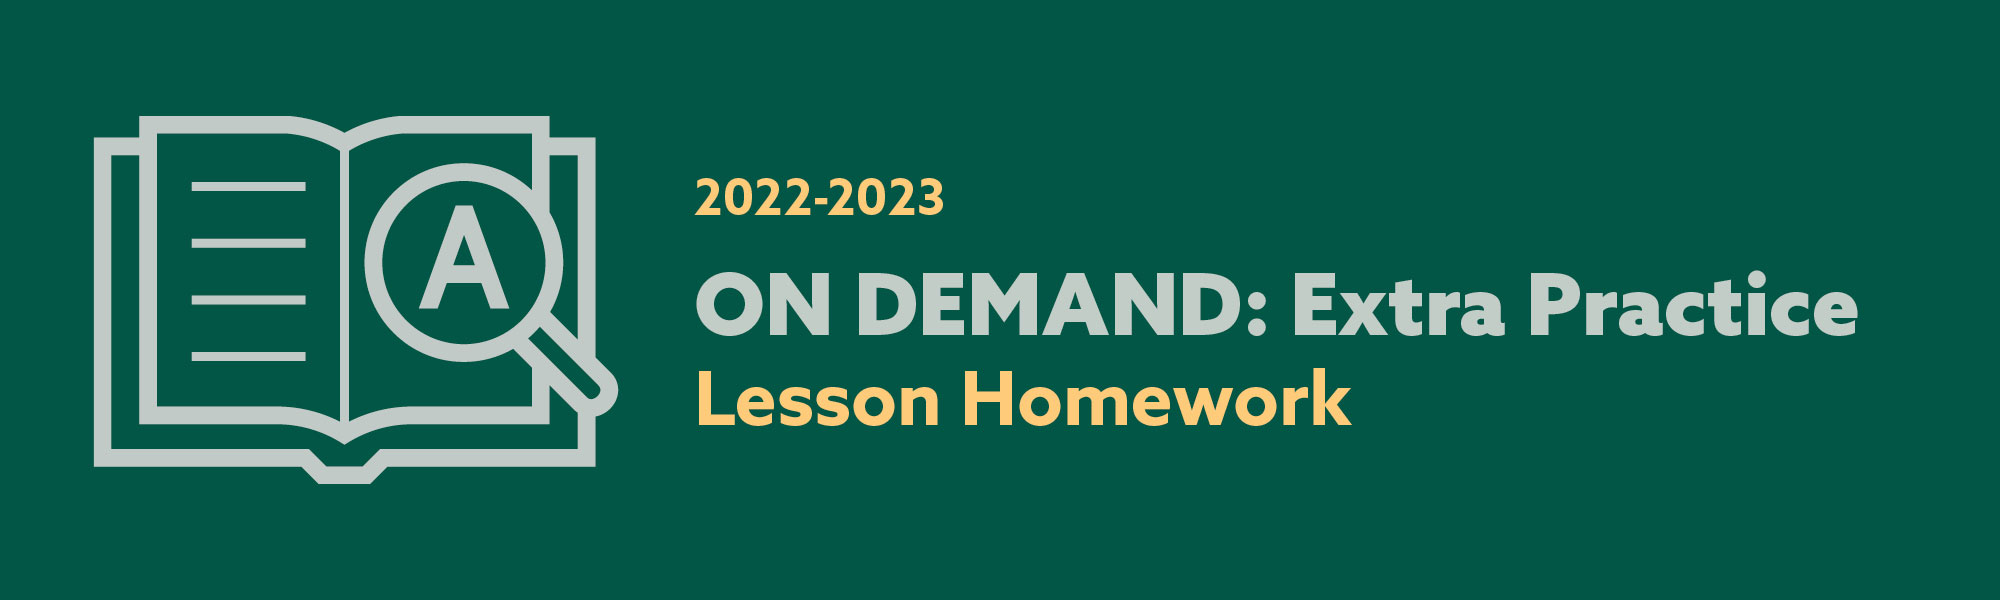 Homework Review 2022-2023